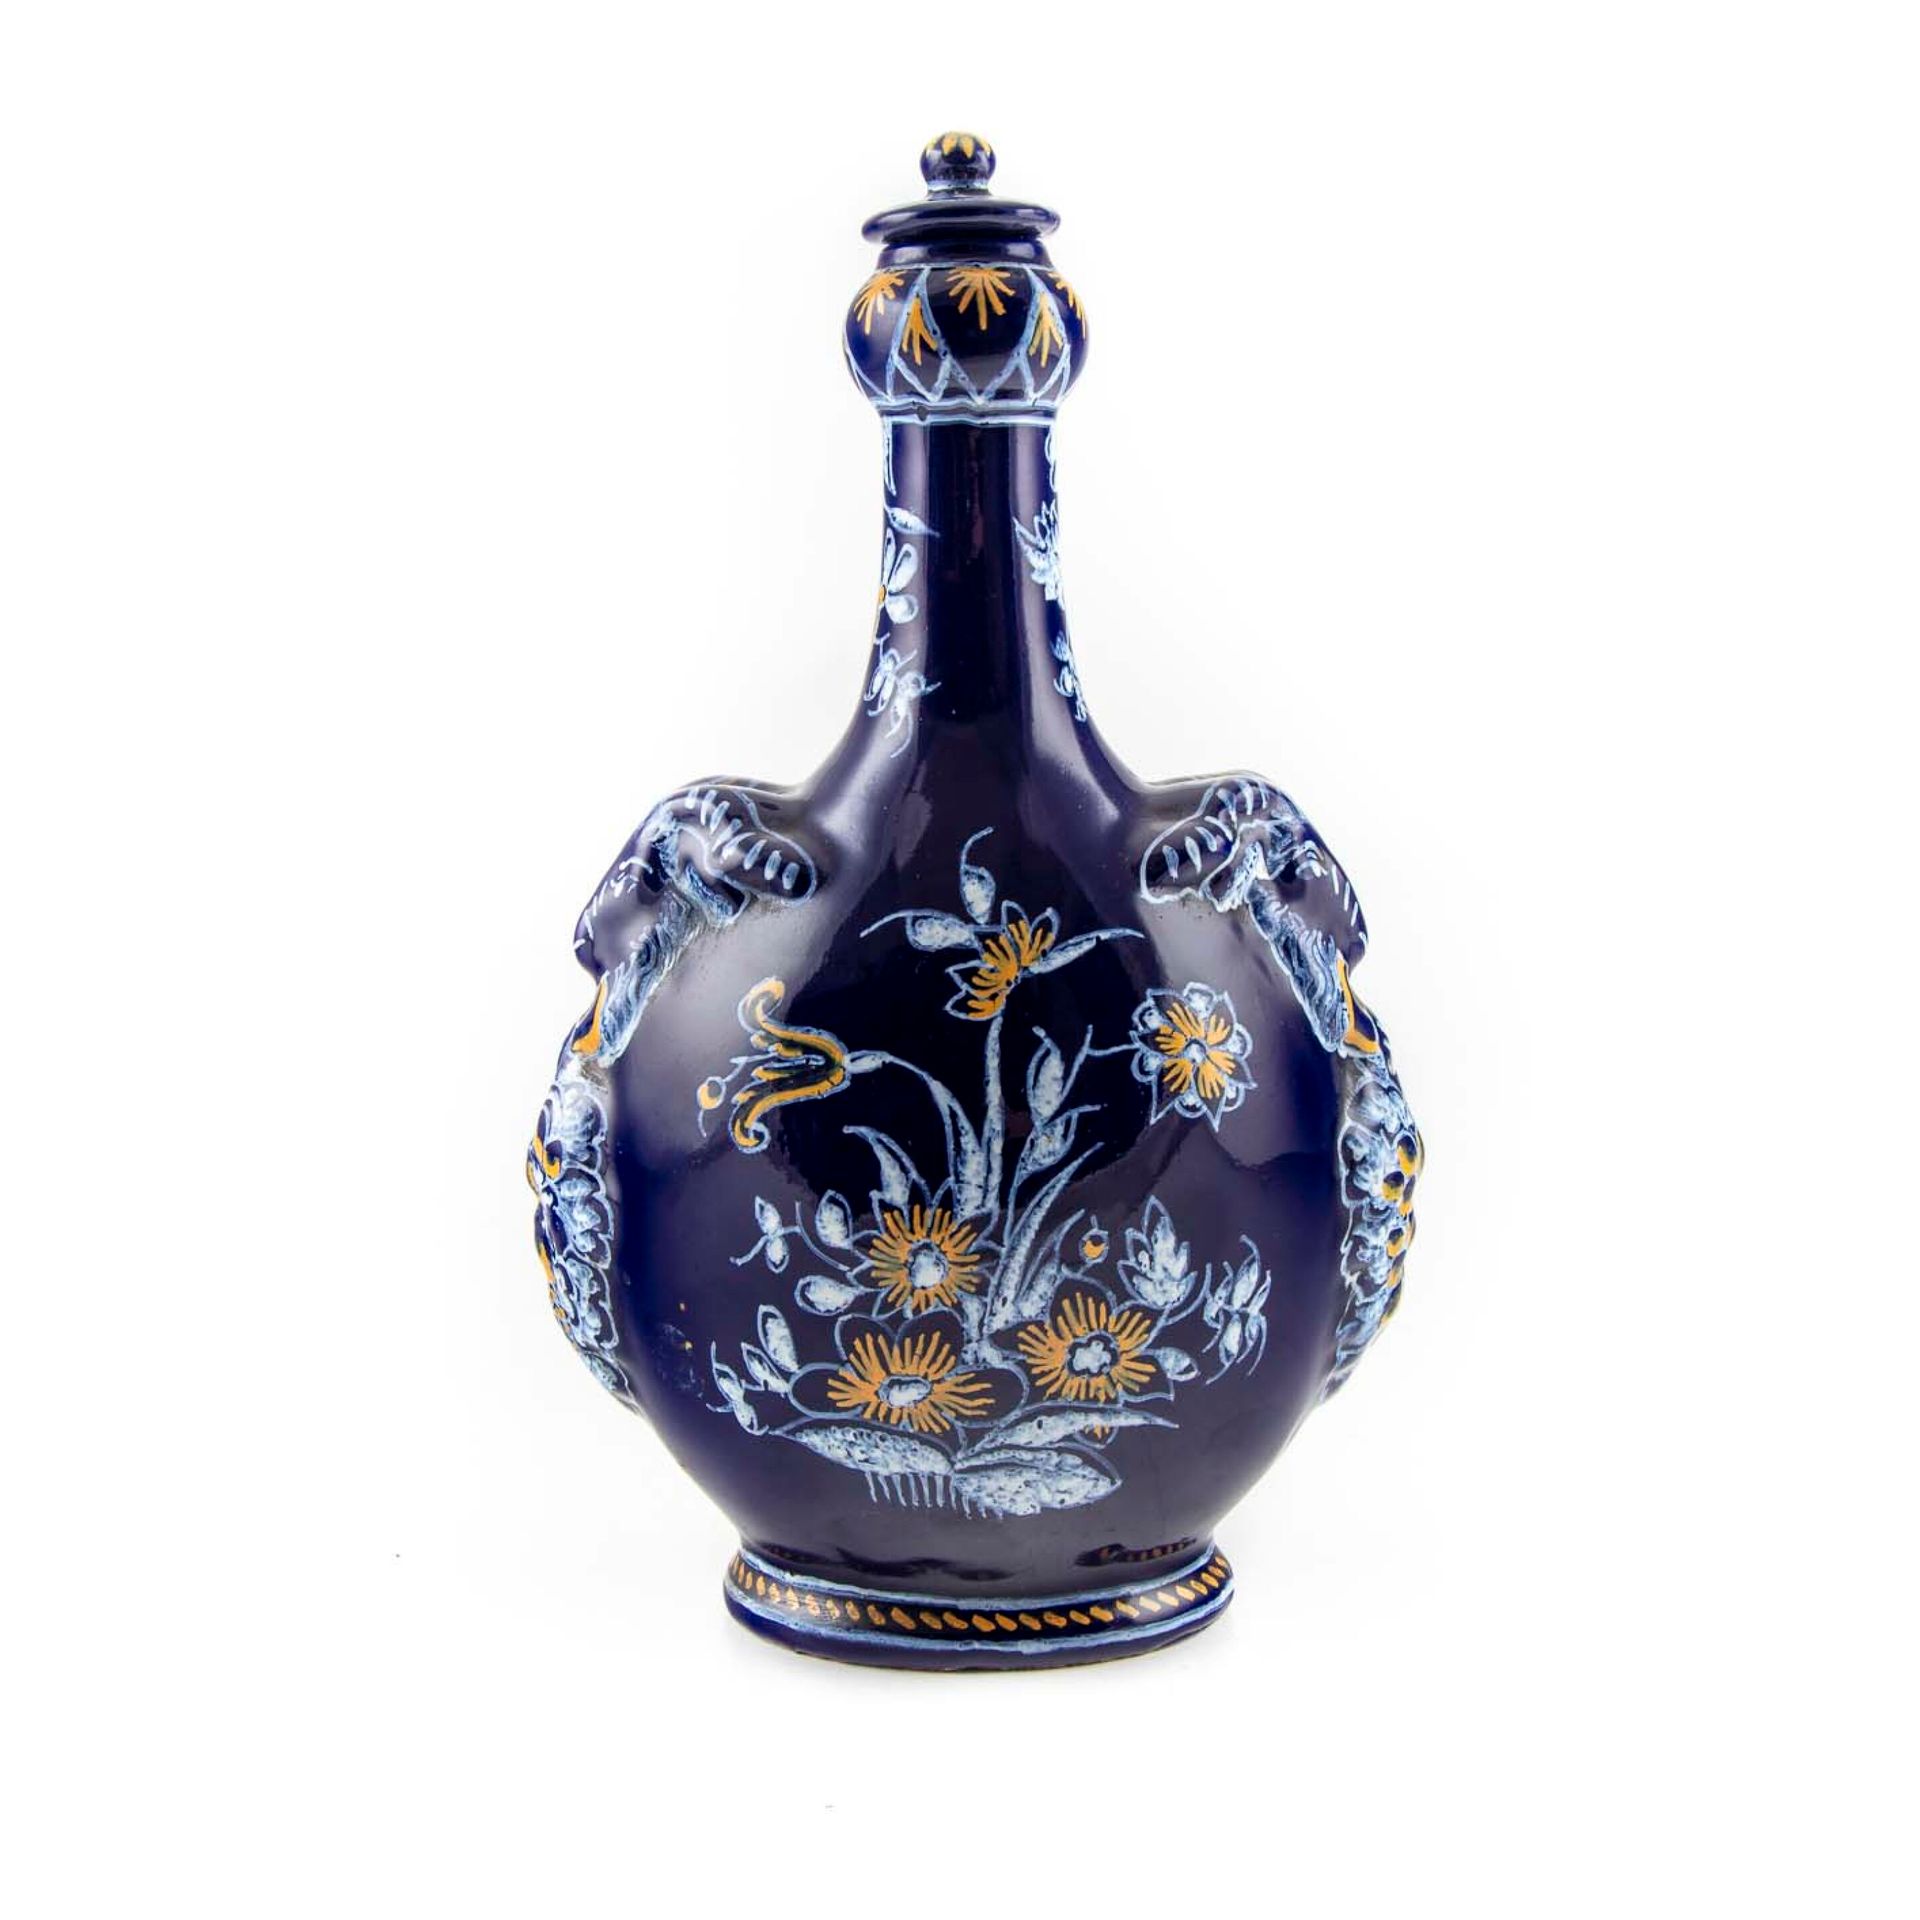 Null Nevers - Montagnon

有盖陶罐，呈柱状，有两个羊头形状的把手，用白色和赭石装饰波斯蓝背景上的花。

蒙塔尼昂的制造

19世纪末

&hellip;